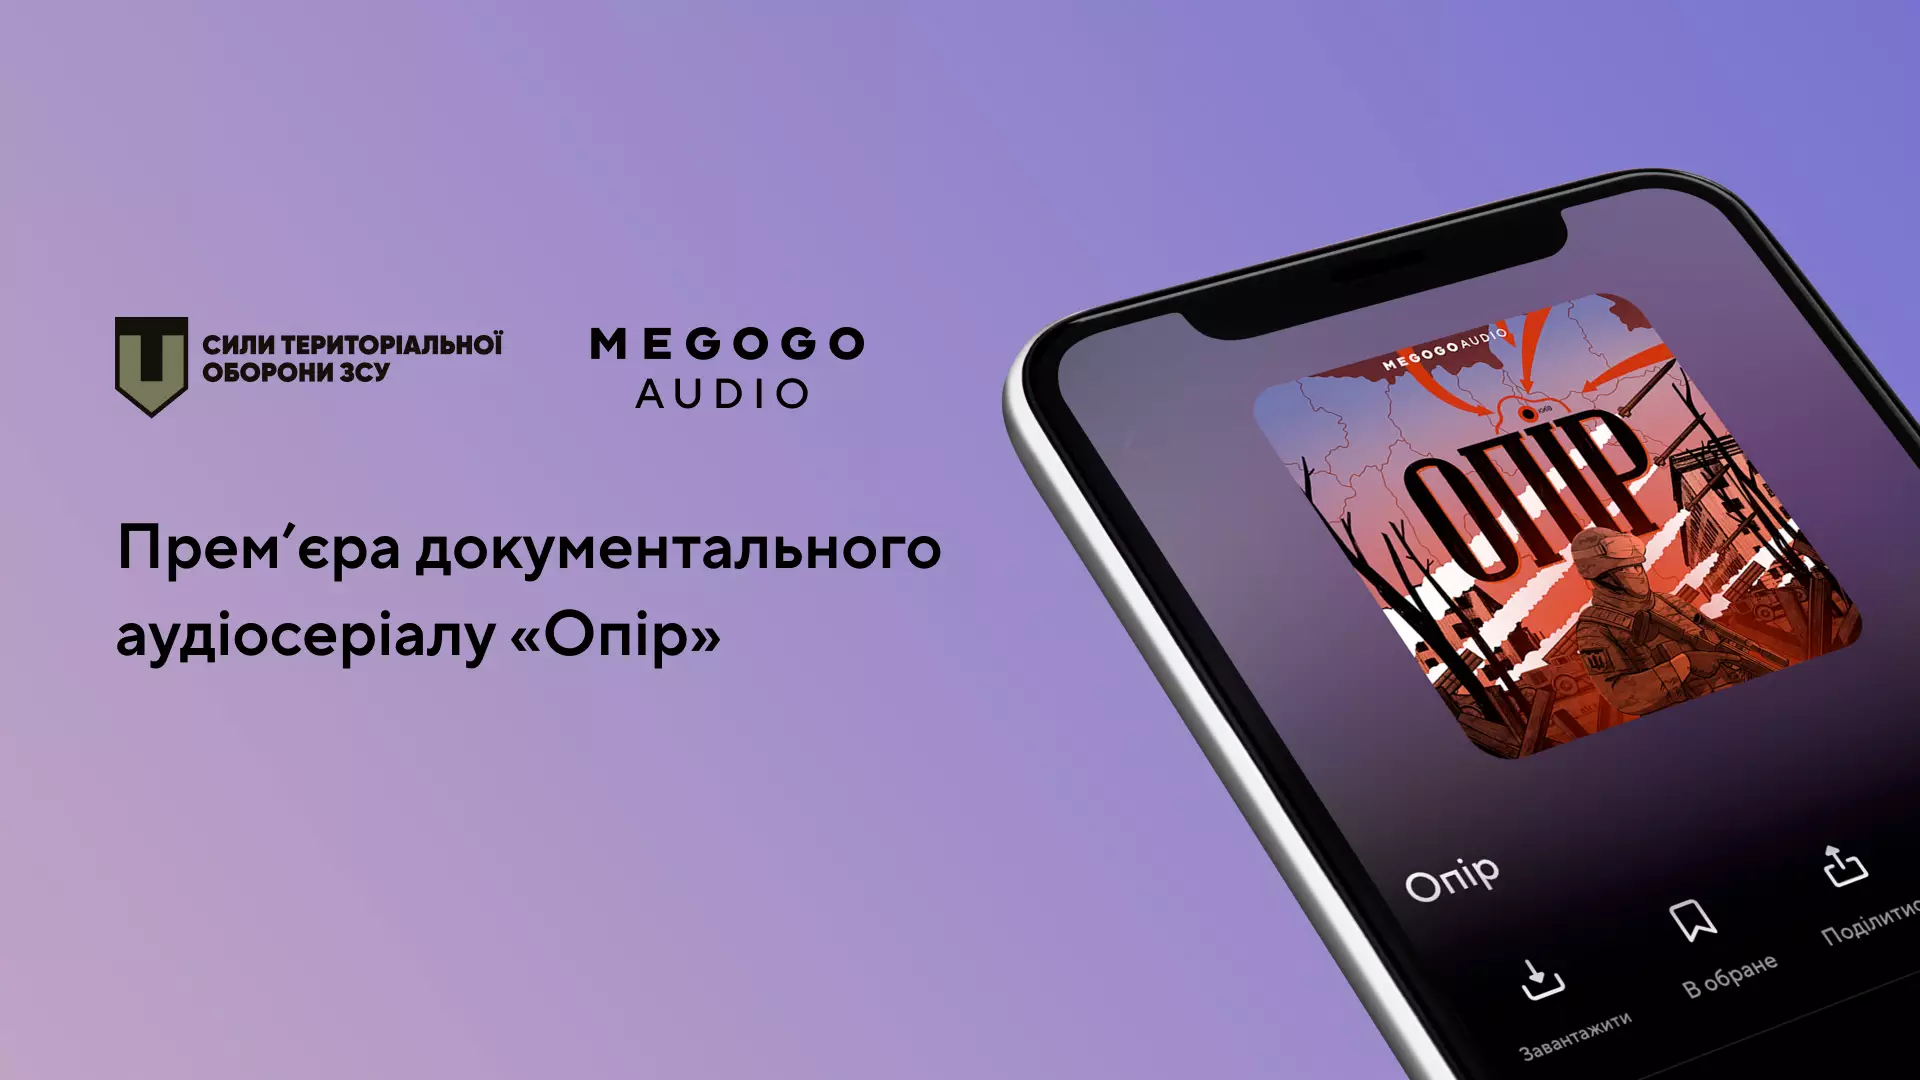 MEGOGO Audio та Сили ТрО ЗСУ випустили документальний аудіосеріал «Опір»